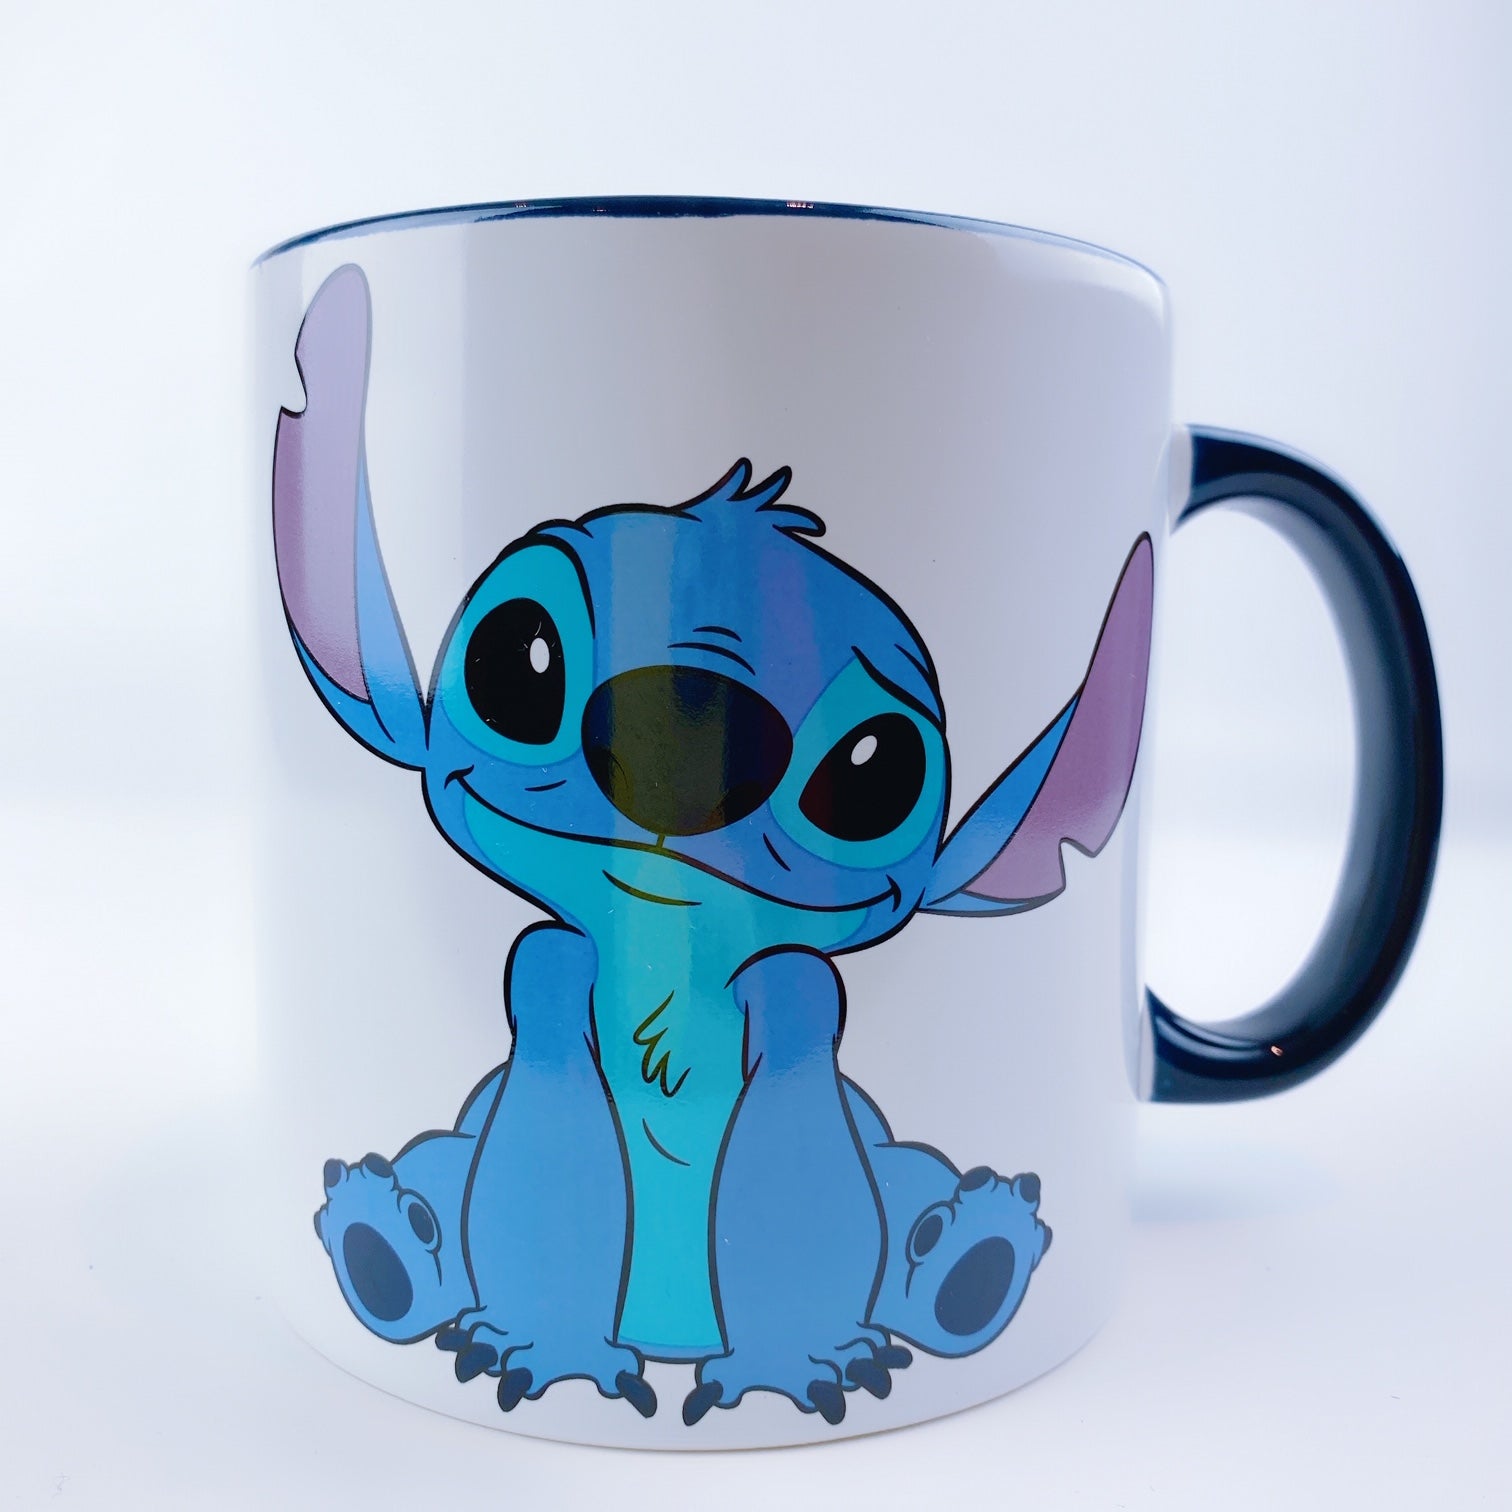  Disney Taza Stitch – Lilo & Stitch : Deportes y